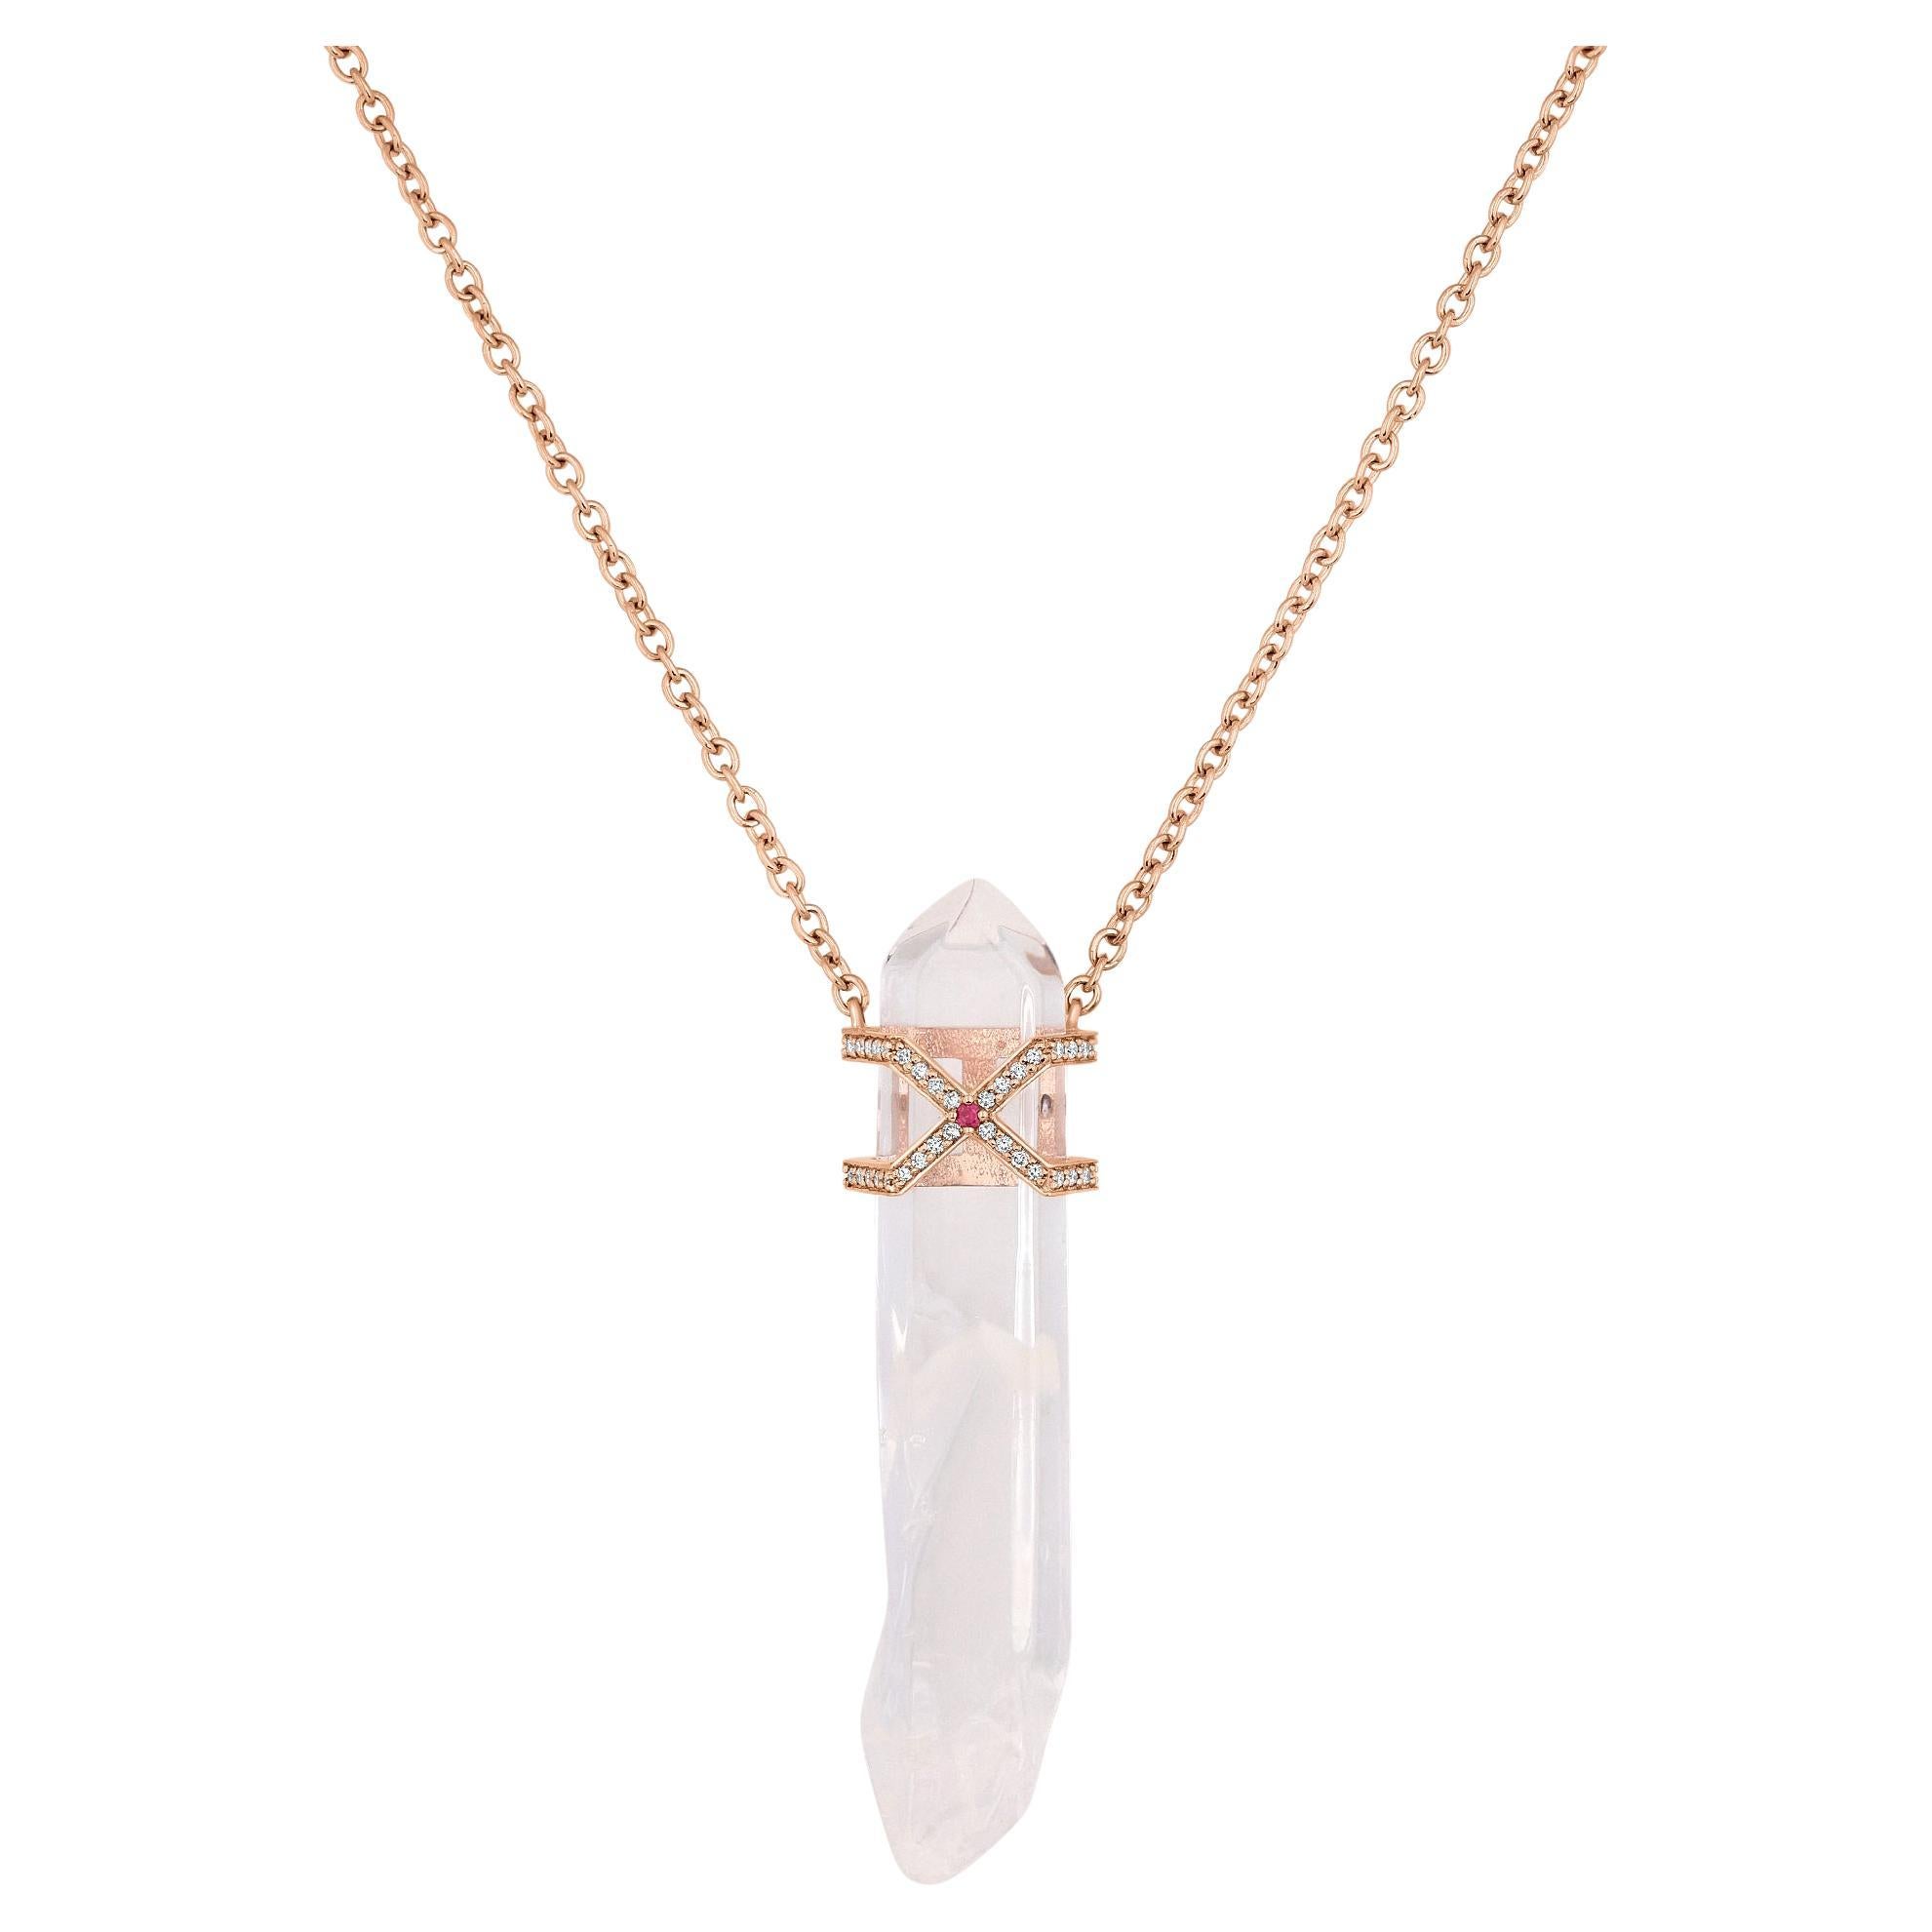 27.41 Carat Quartz Crystal Necklace For Sale